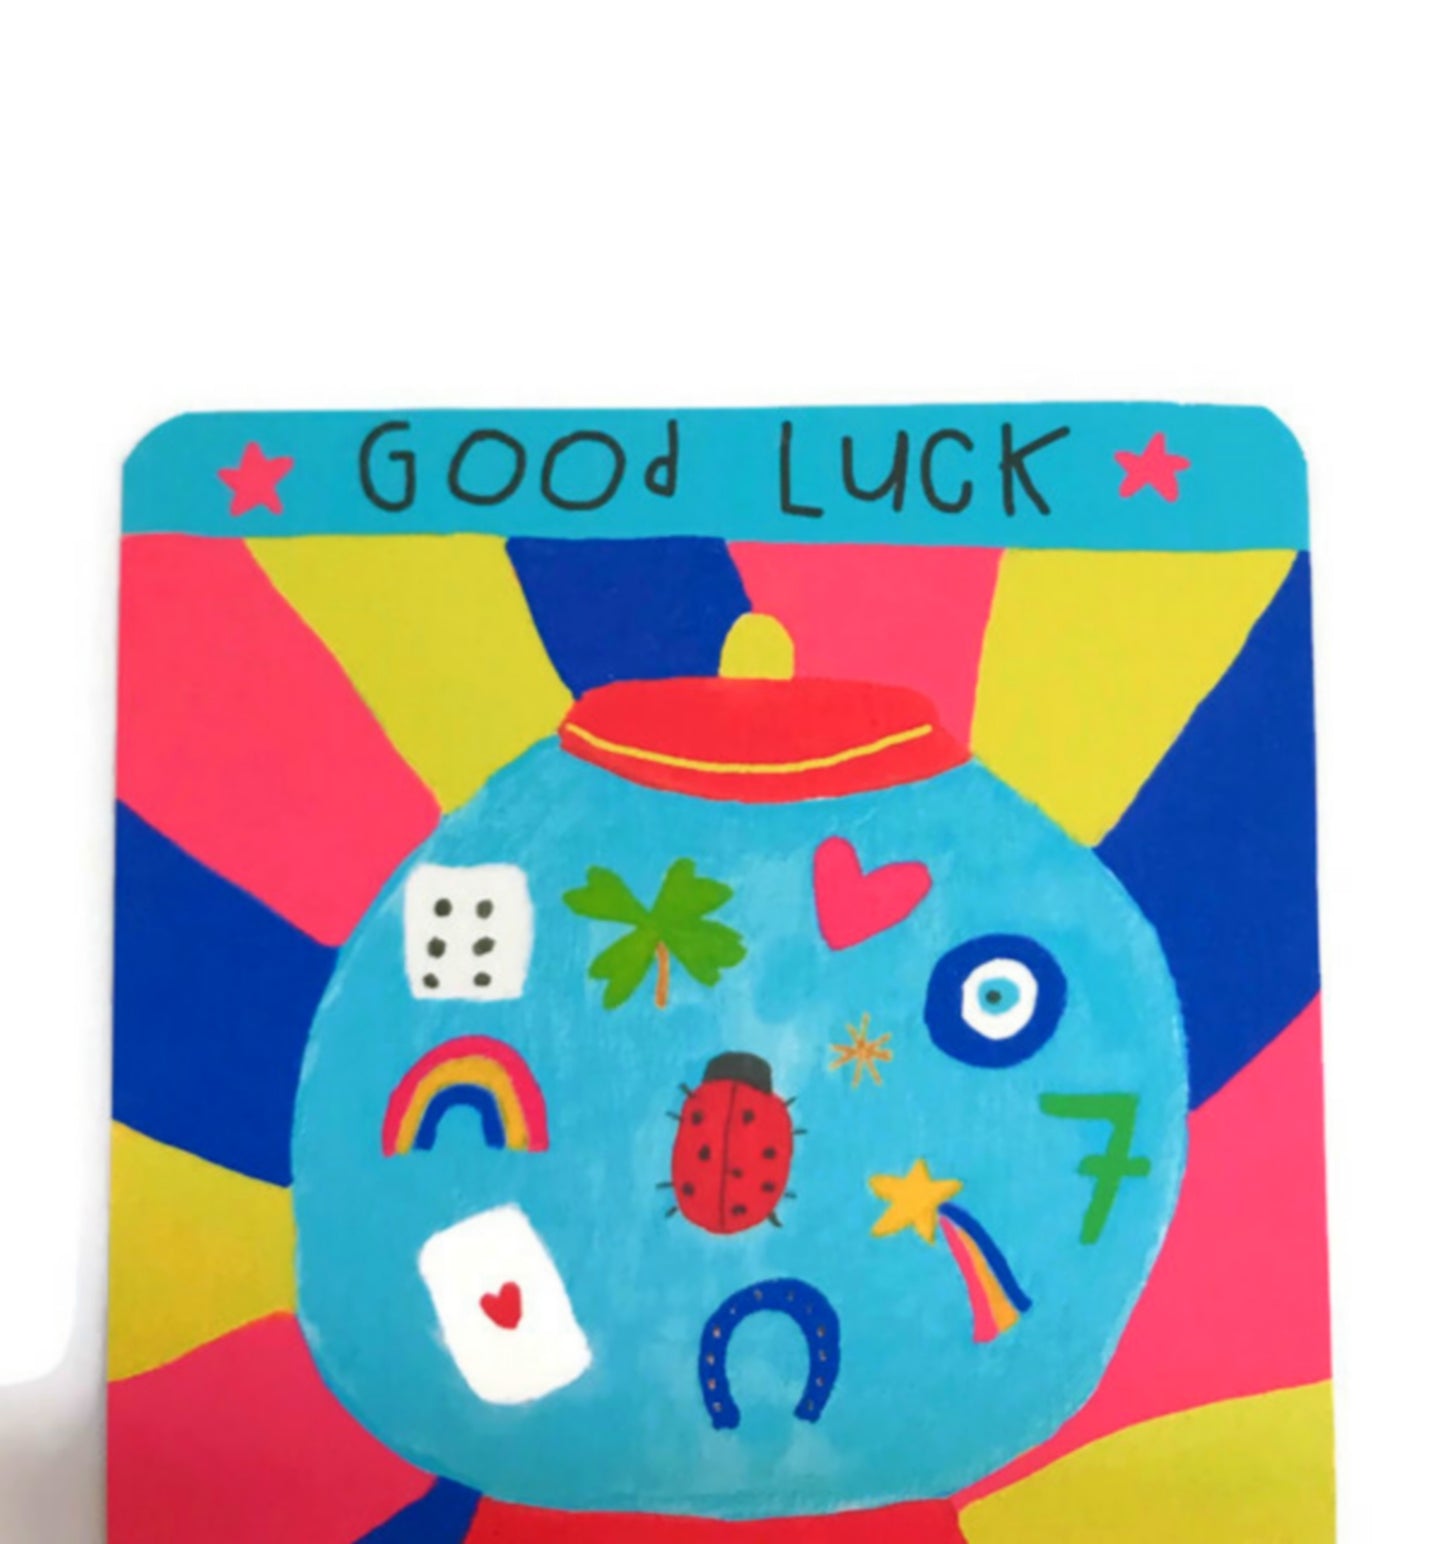 Good luck card - Luck Dispenser